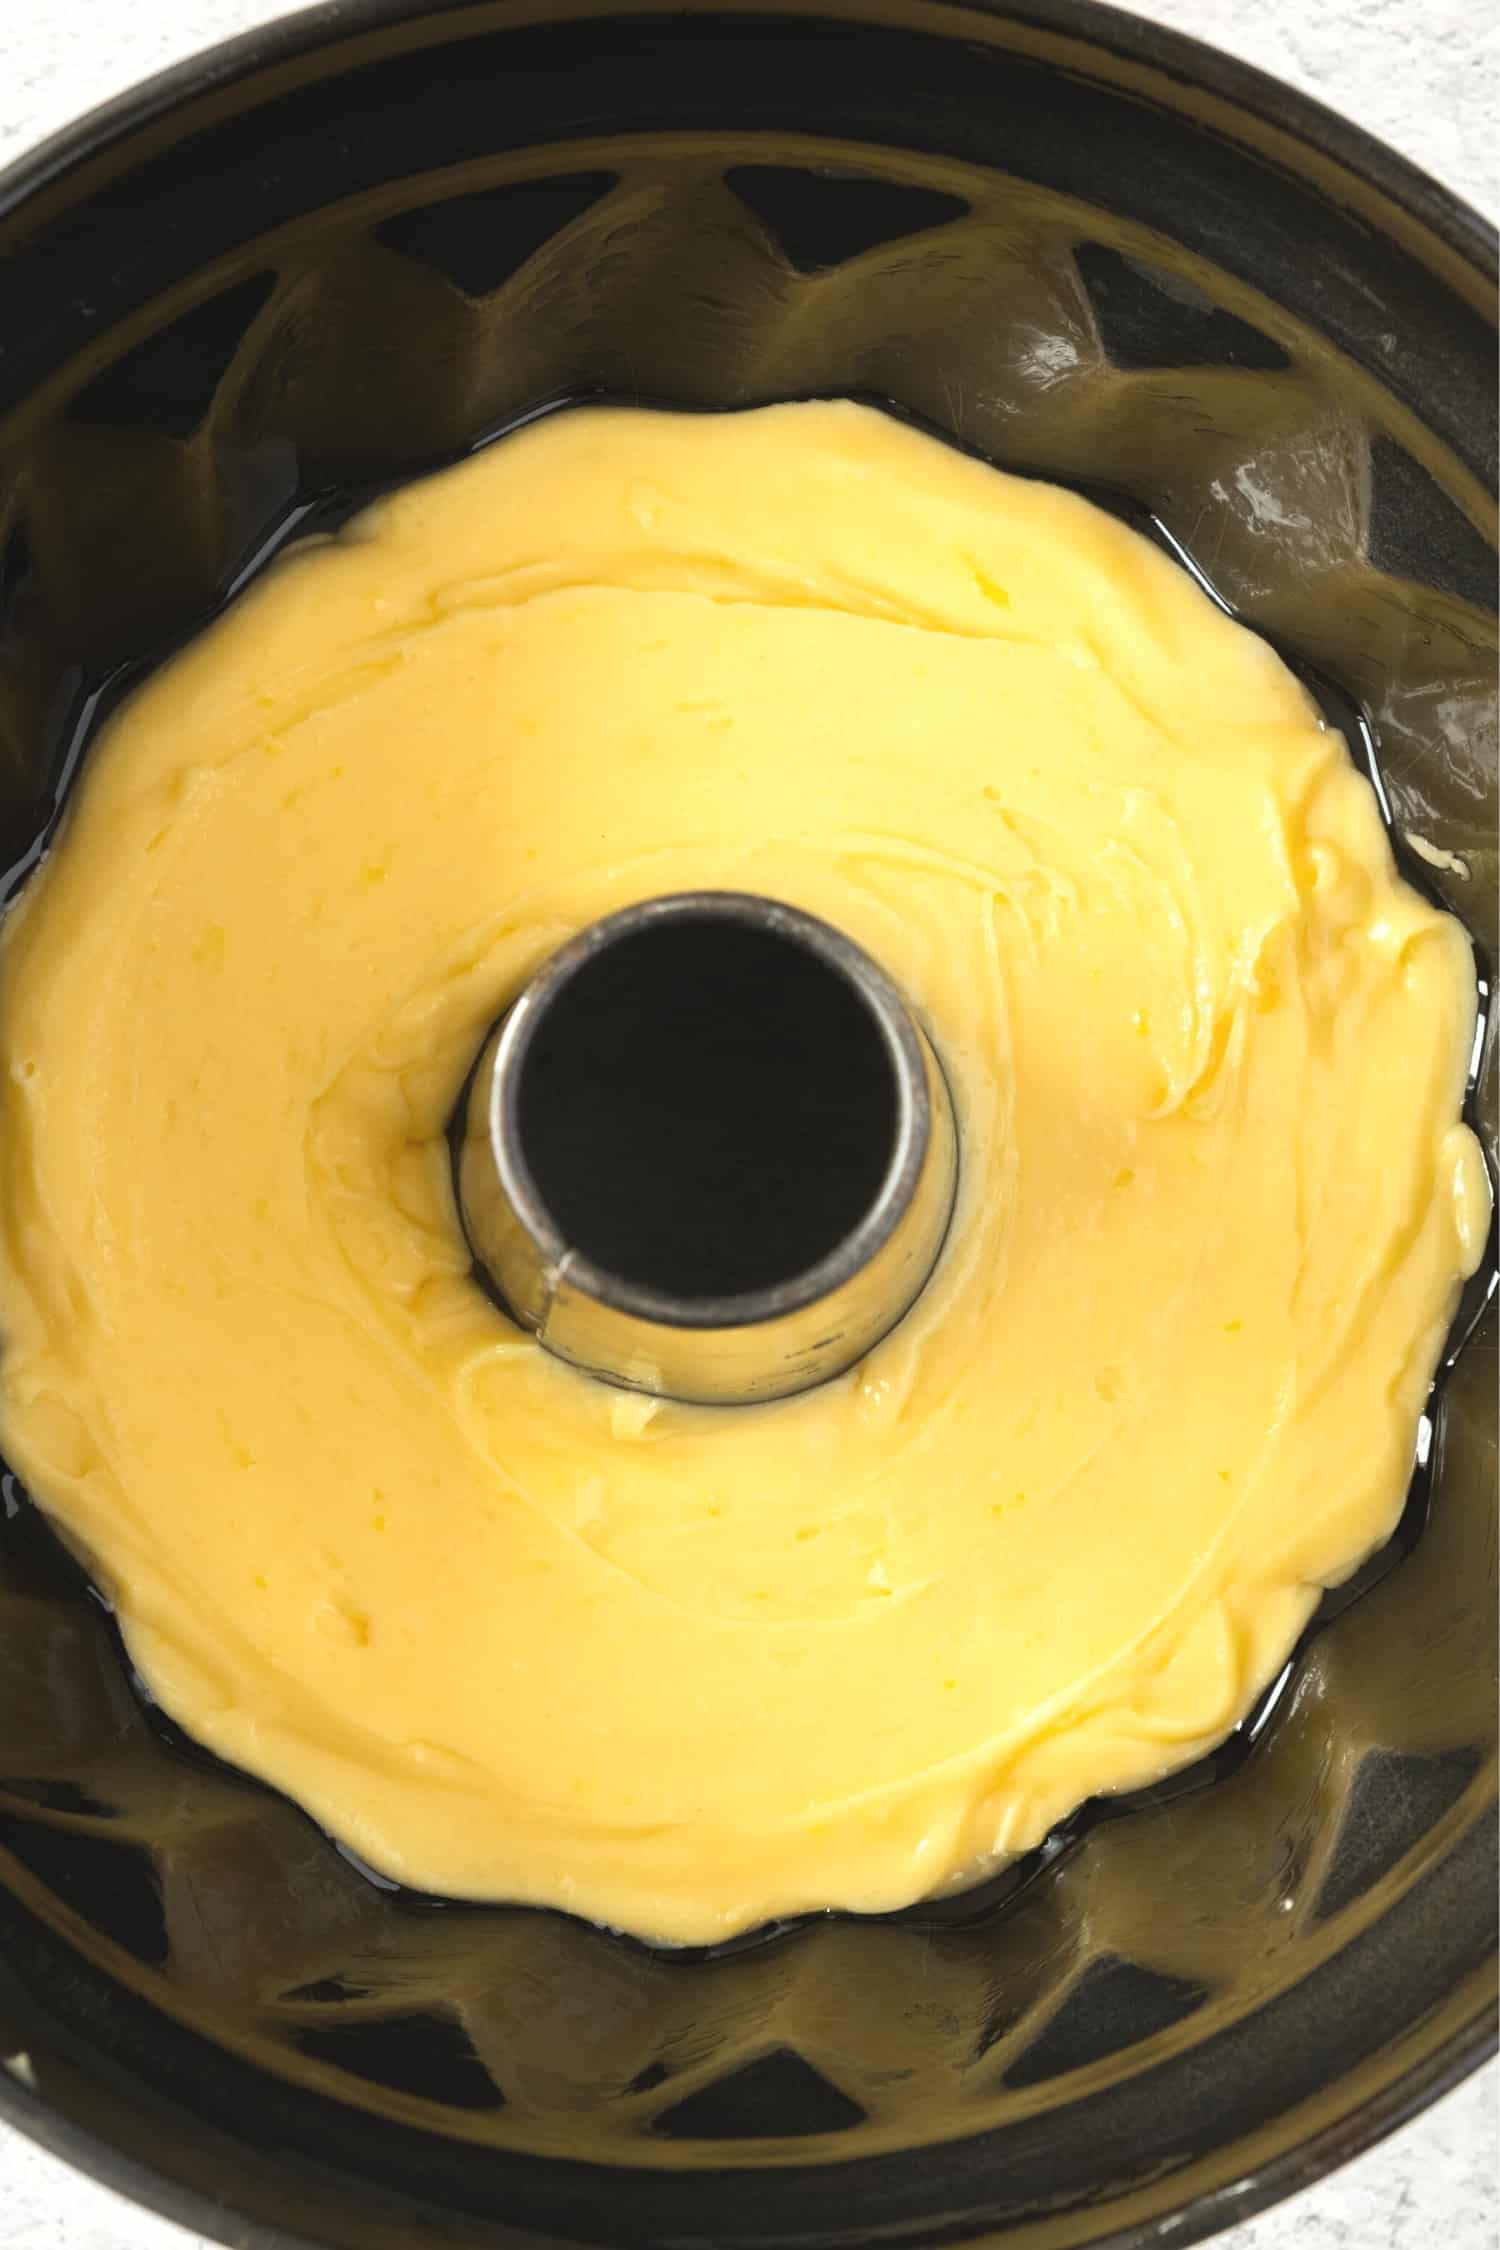 Lemon cake batter in bundt cake pan.